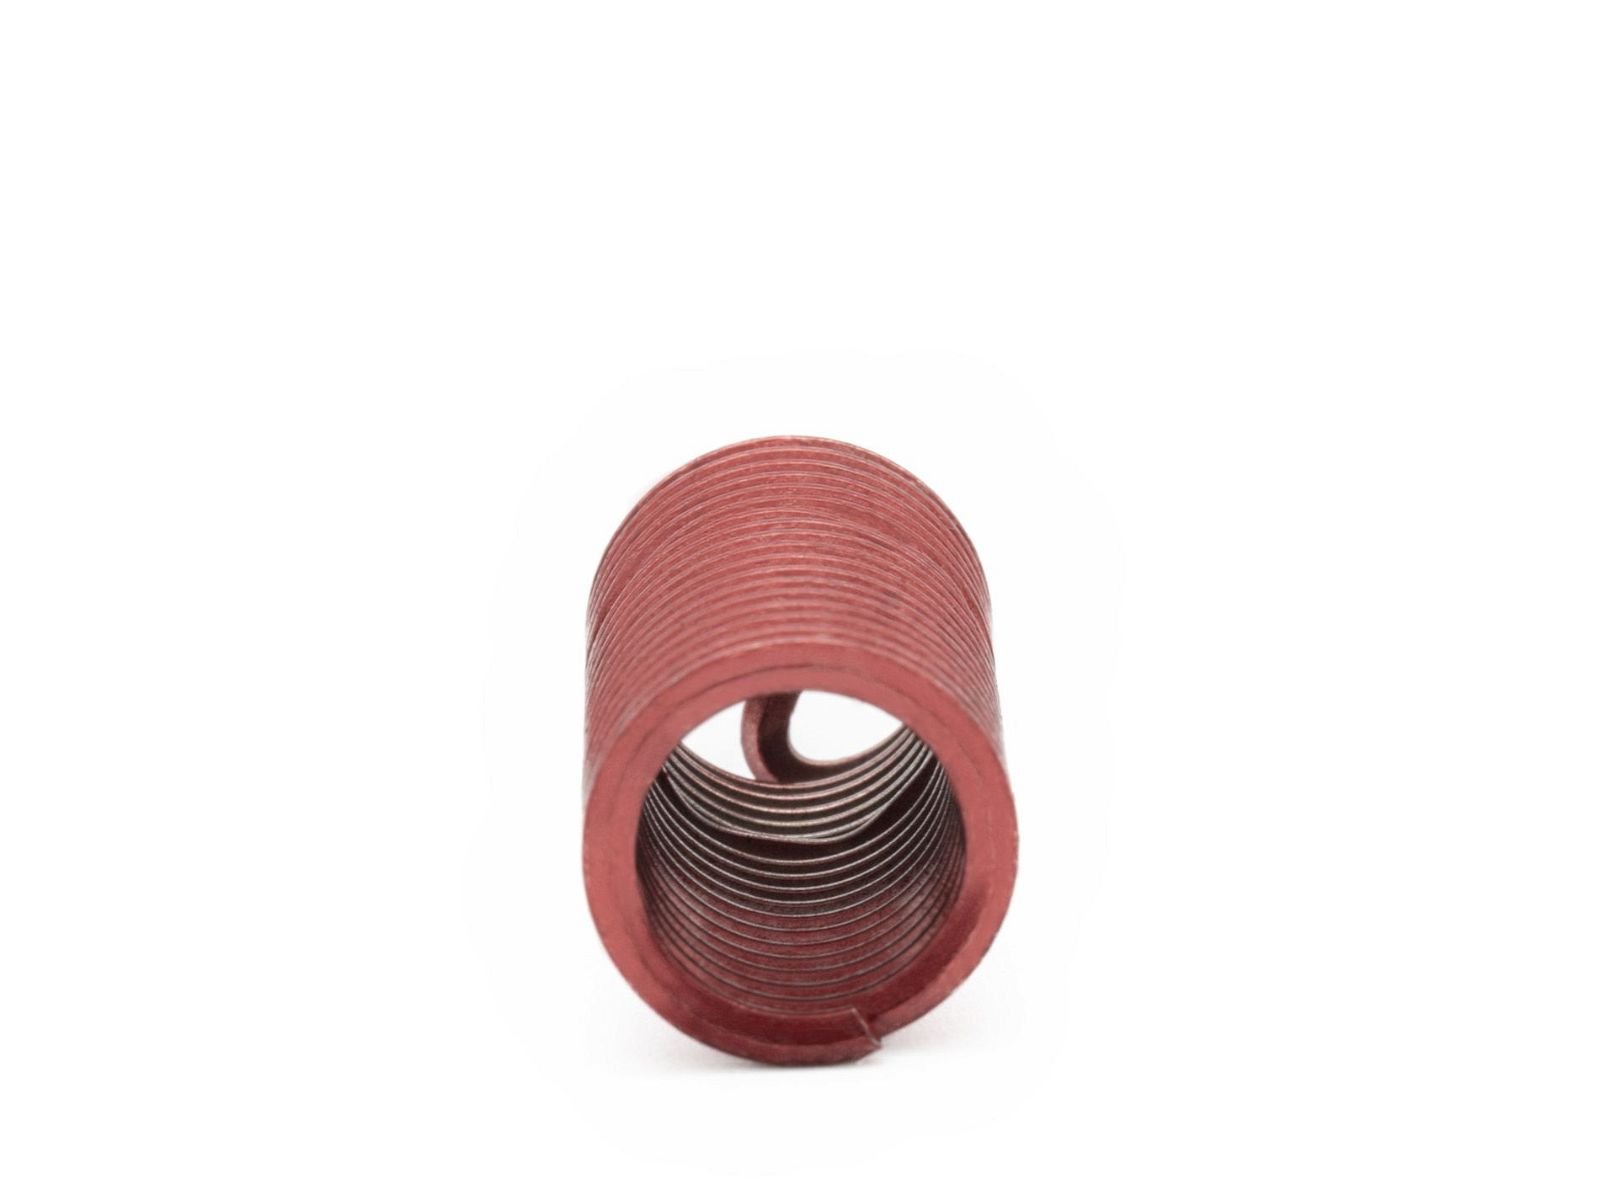 BaerCoil Drahtgewindeeinsätze UNF 1/2 x 20 - 3,0 D (38,1 mm) - screw grip (schraubensichernd) - 100 Stück